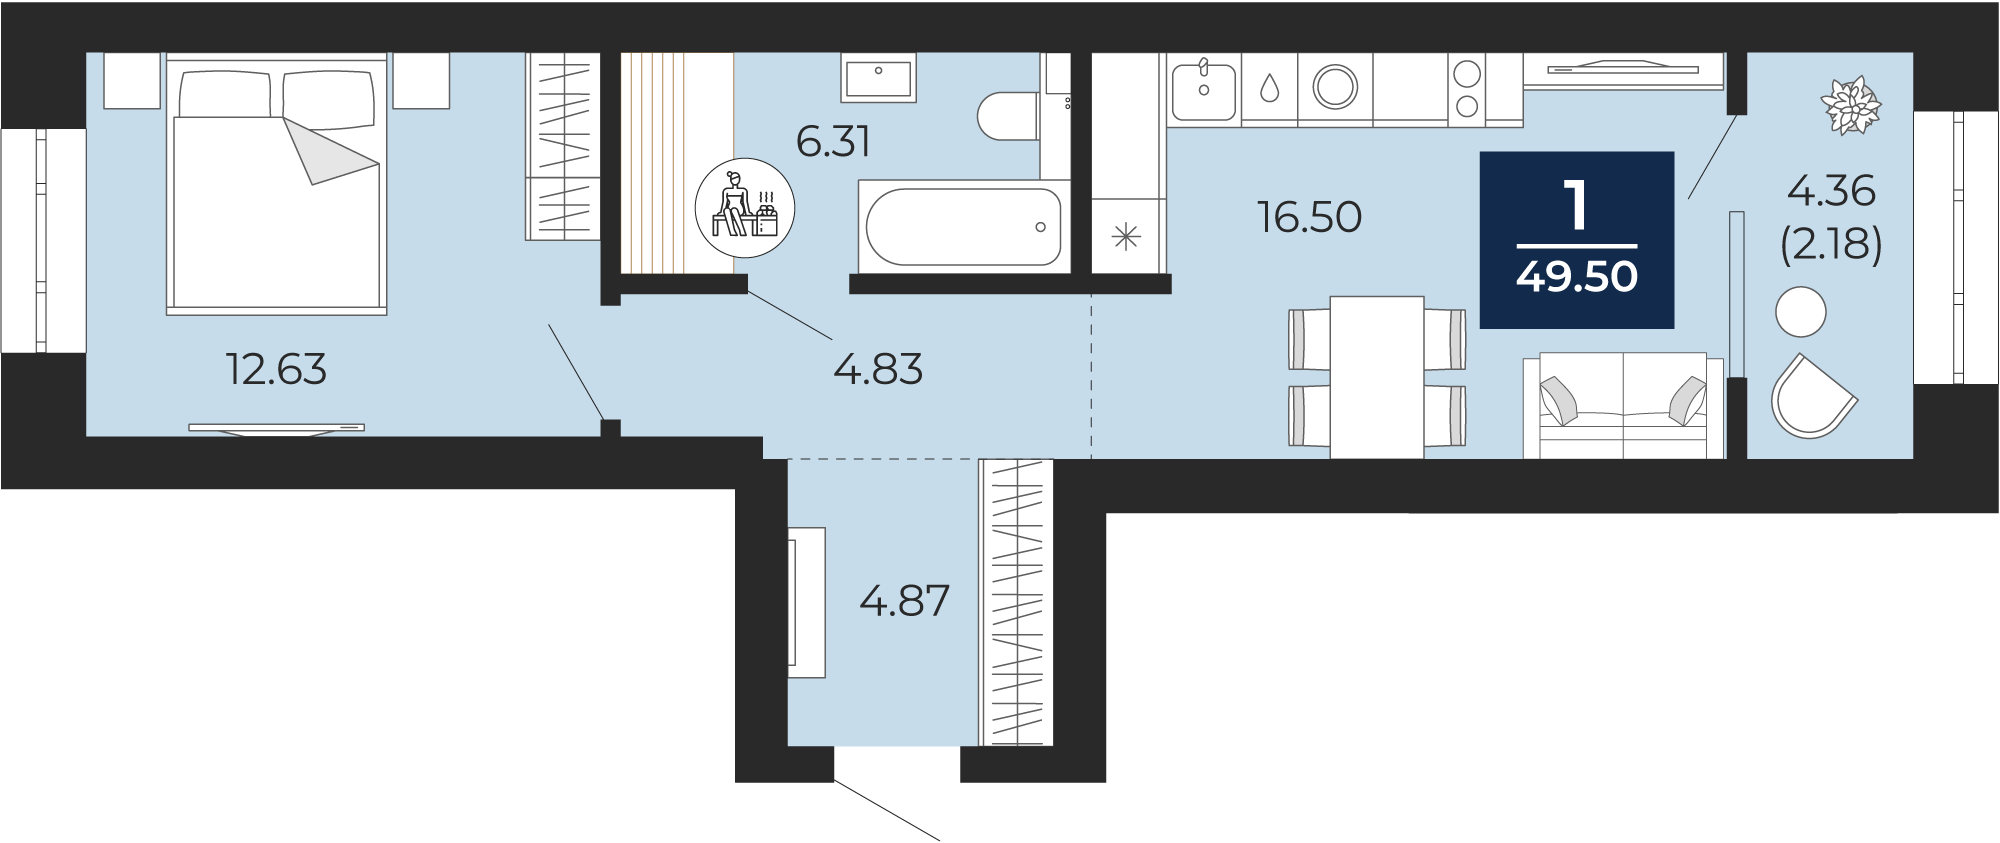 Квартира № 193, 1-комнатная, 49.5 кв. м, 12 этаж